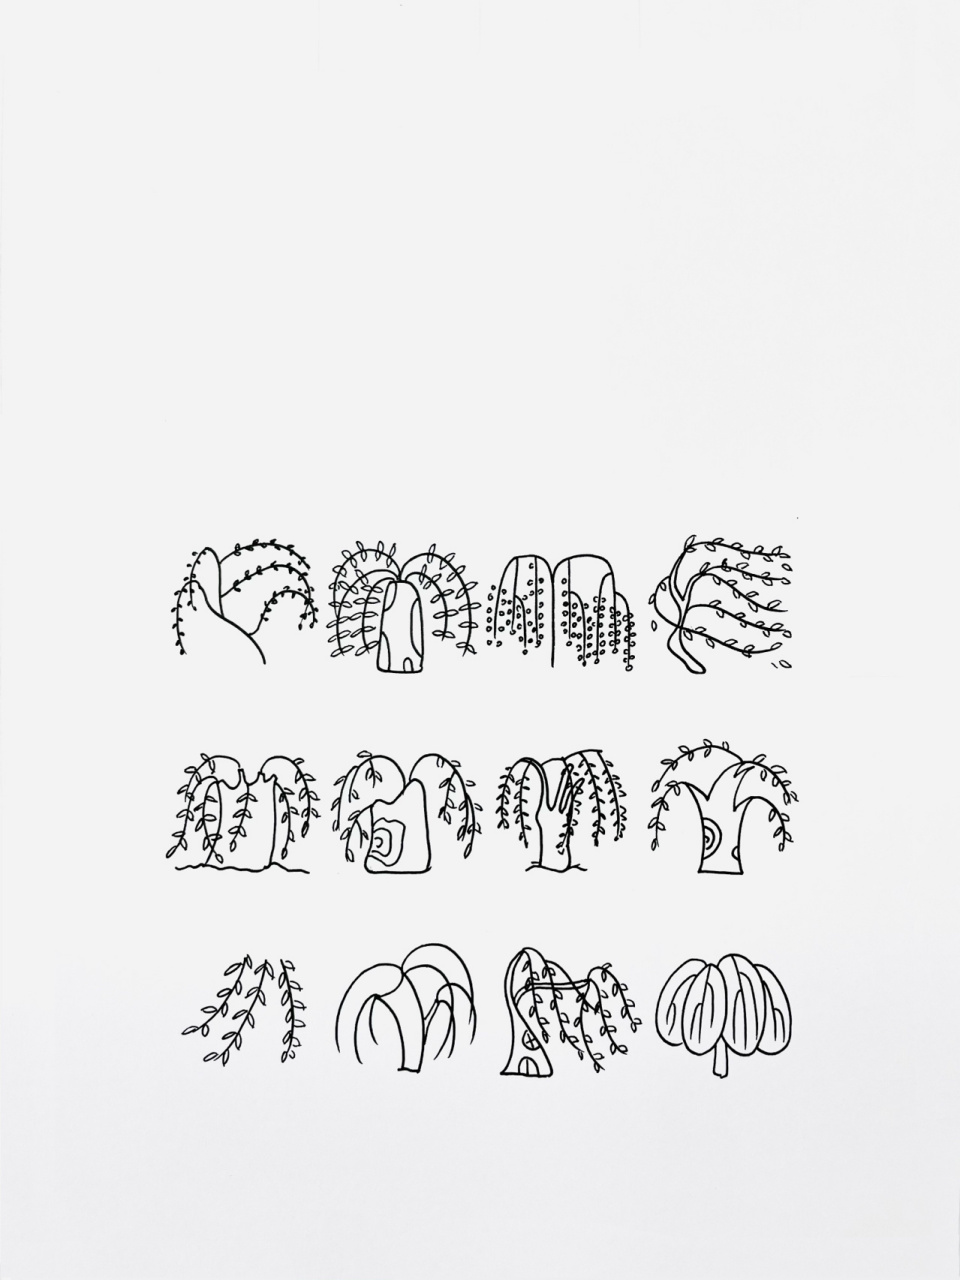 【简笔画】柳树98 分享一组植物类简笔画—98 还喜欢什么,大家